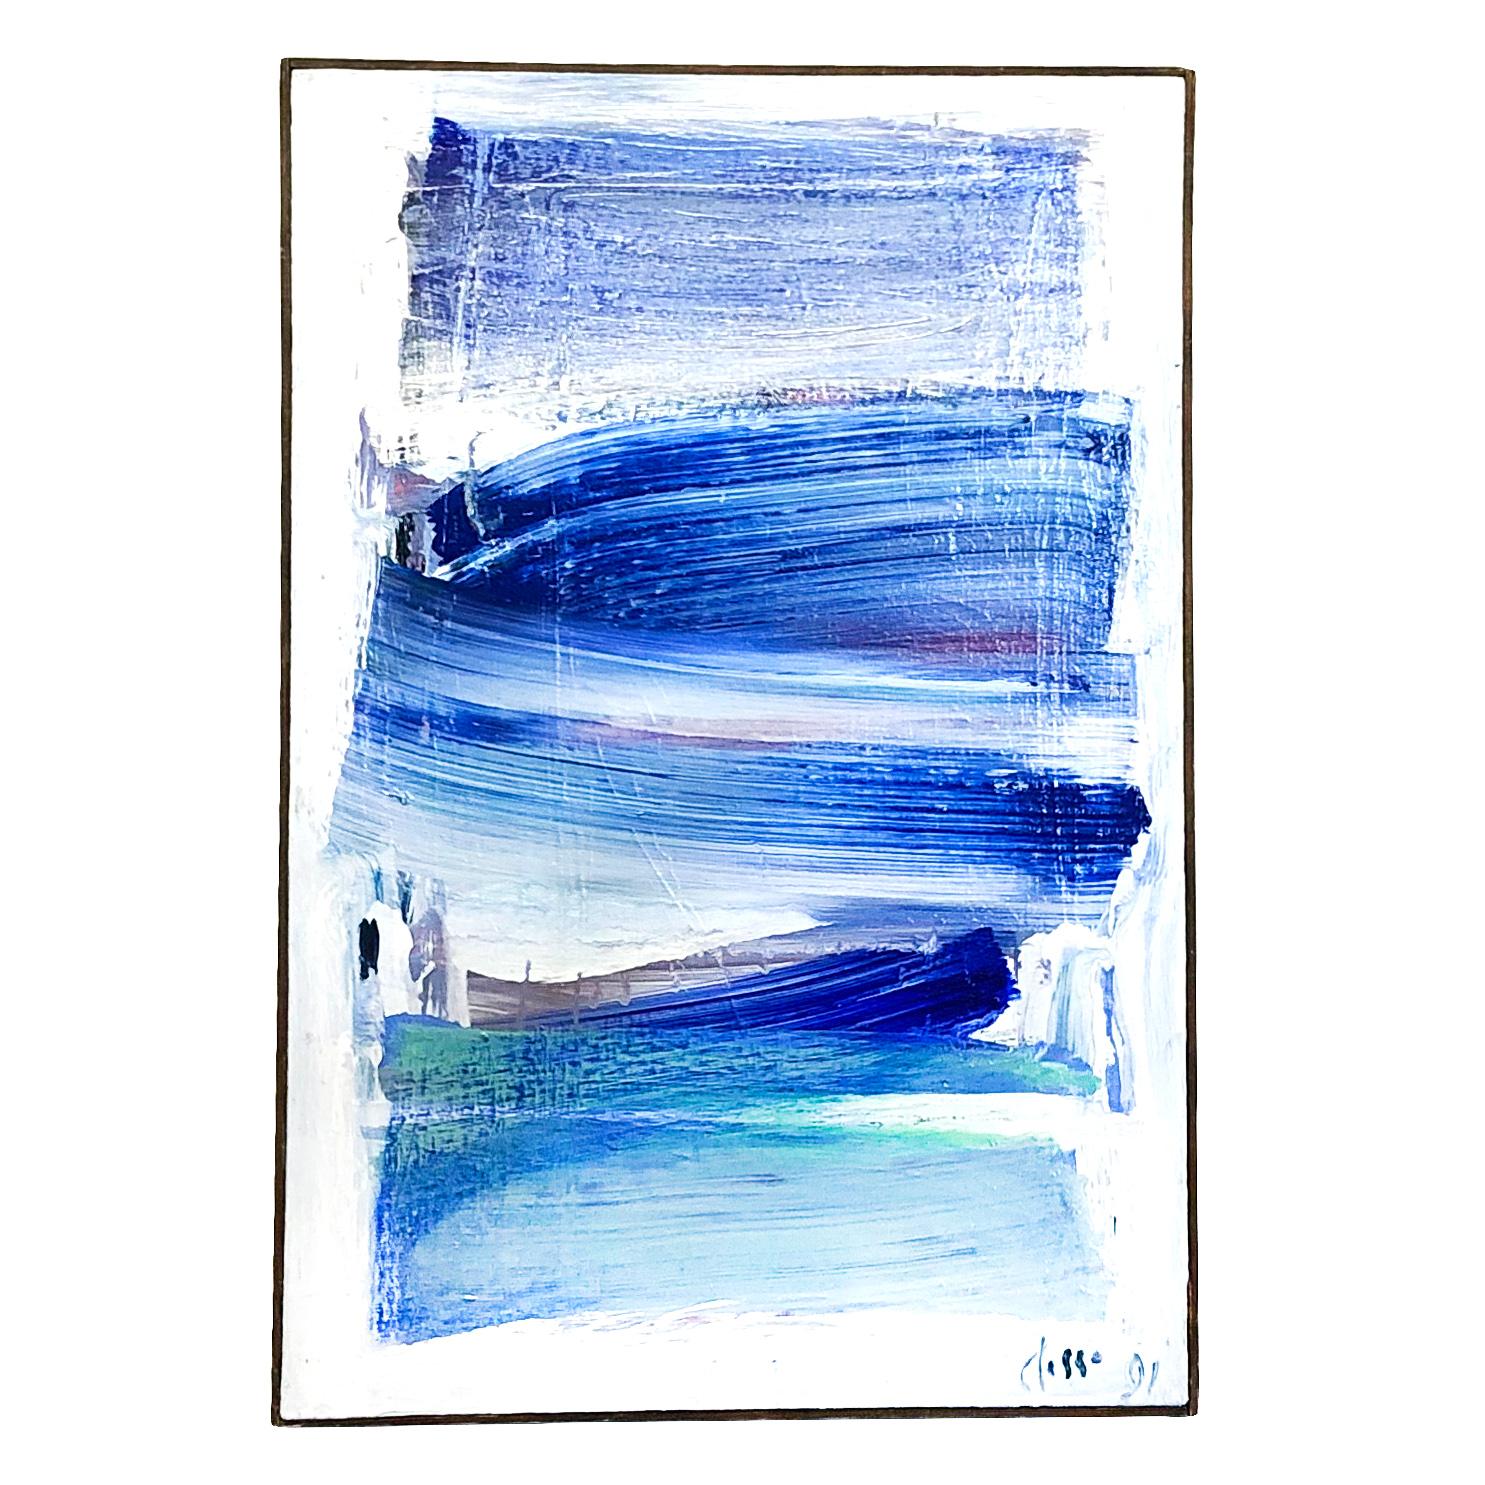 Un tableau abstrait moderne français bleu clair, blanc, livres empilés, huile sur bois de Daniel Clesse, peint en France, signé et daté en 1991.

Daniel Clesse est un peintre français né en 1932 à Paris, France et décédé en 2016. Lui et son épouse